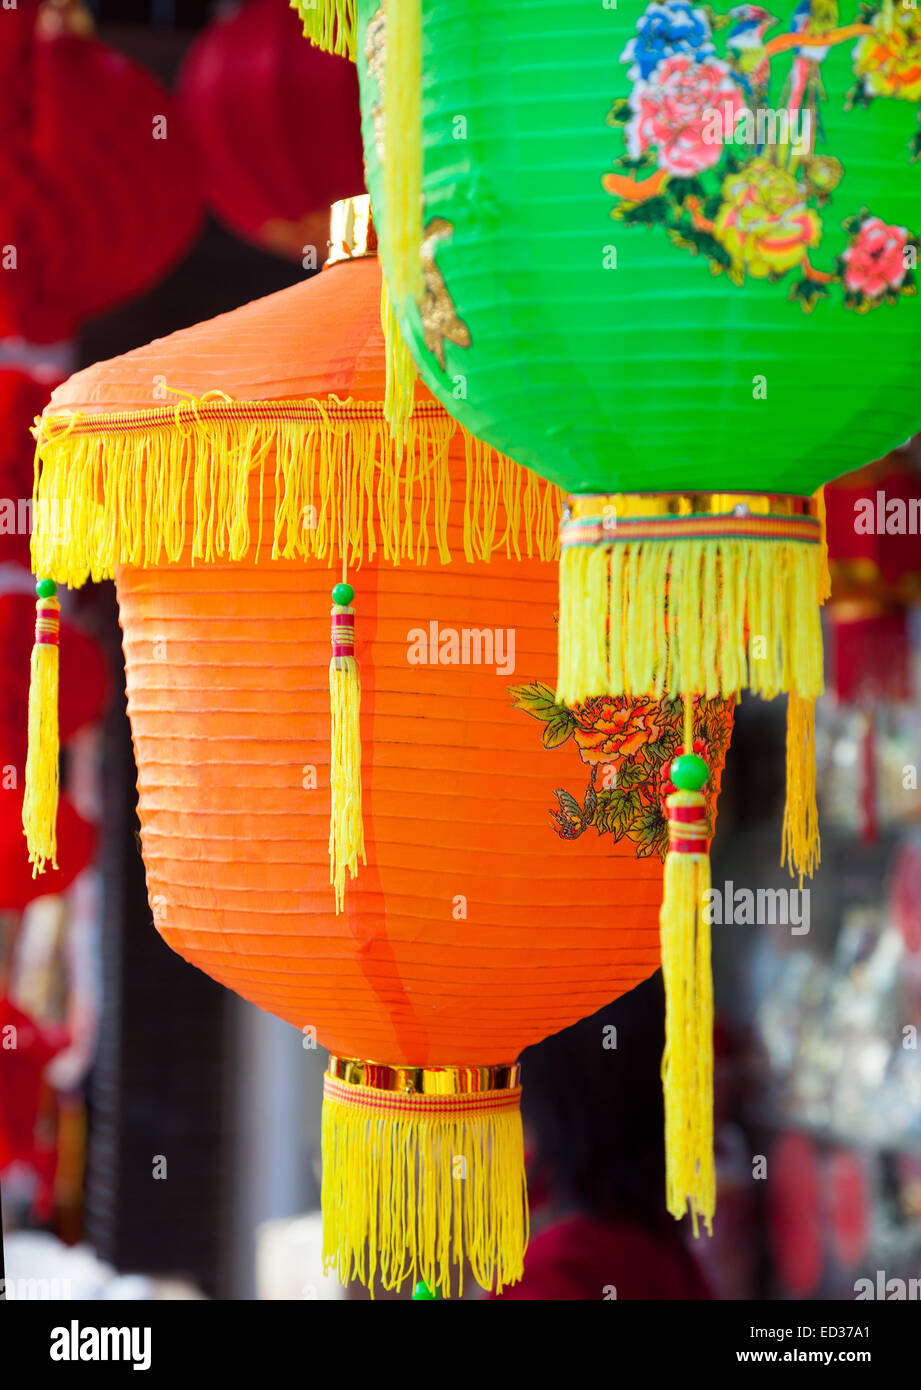 Colorati cinese lanterne di carta appeso in una strada martket preparato per il festival della primavera cinese Foto Stock